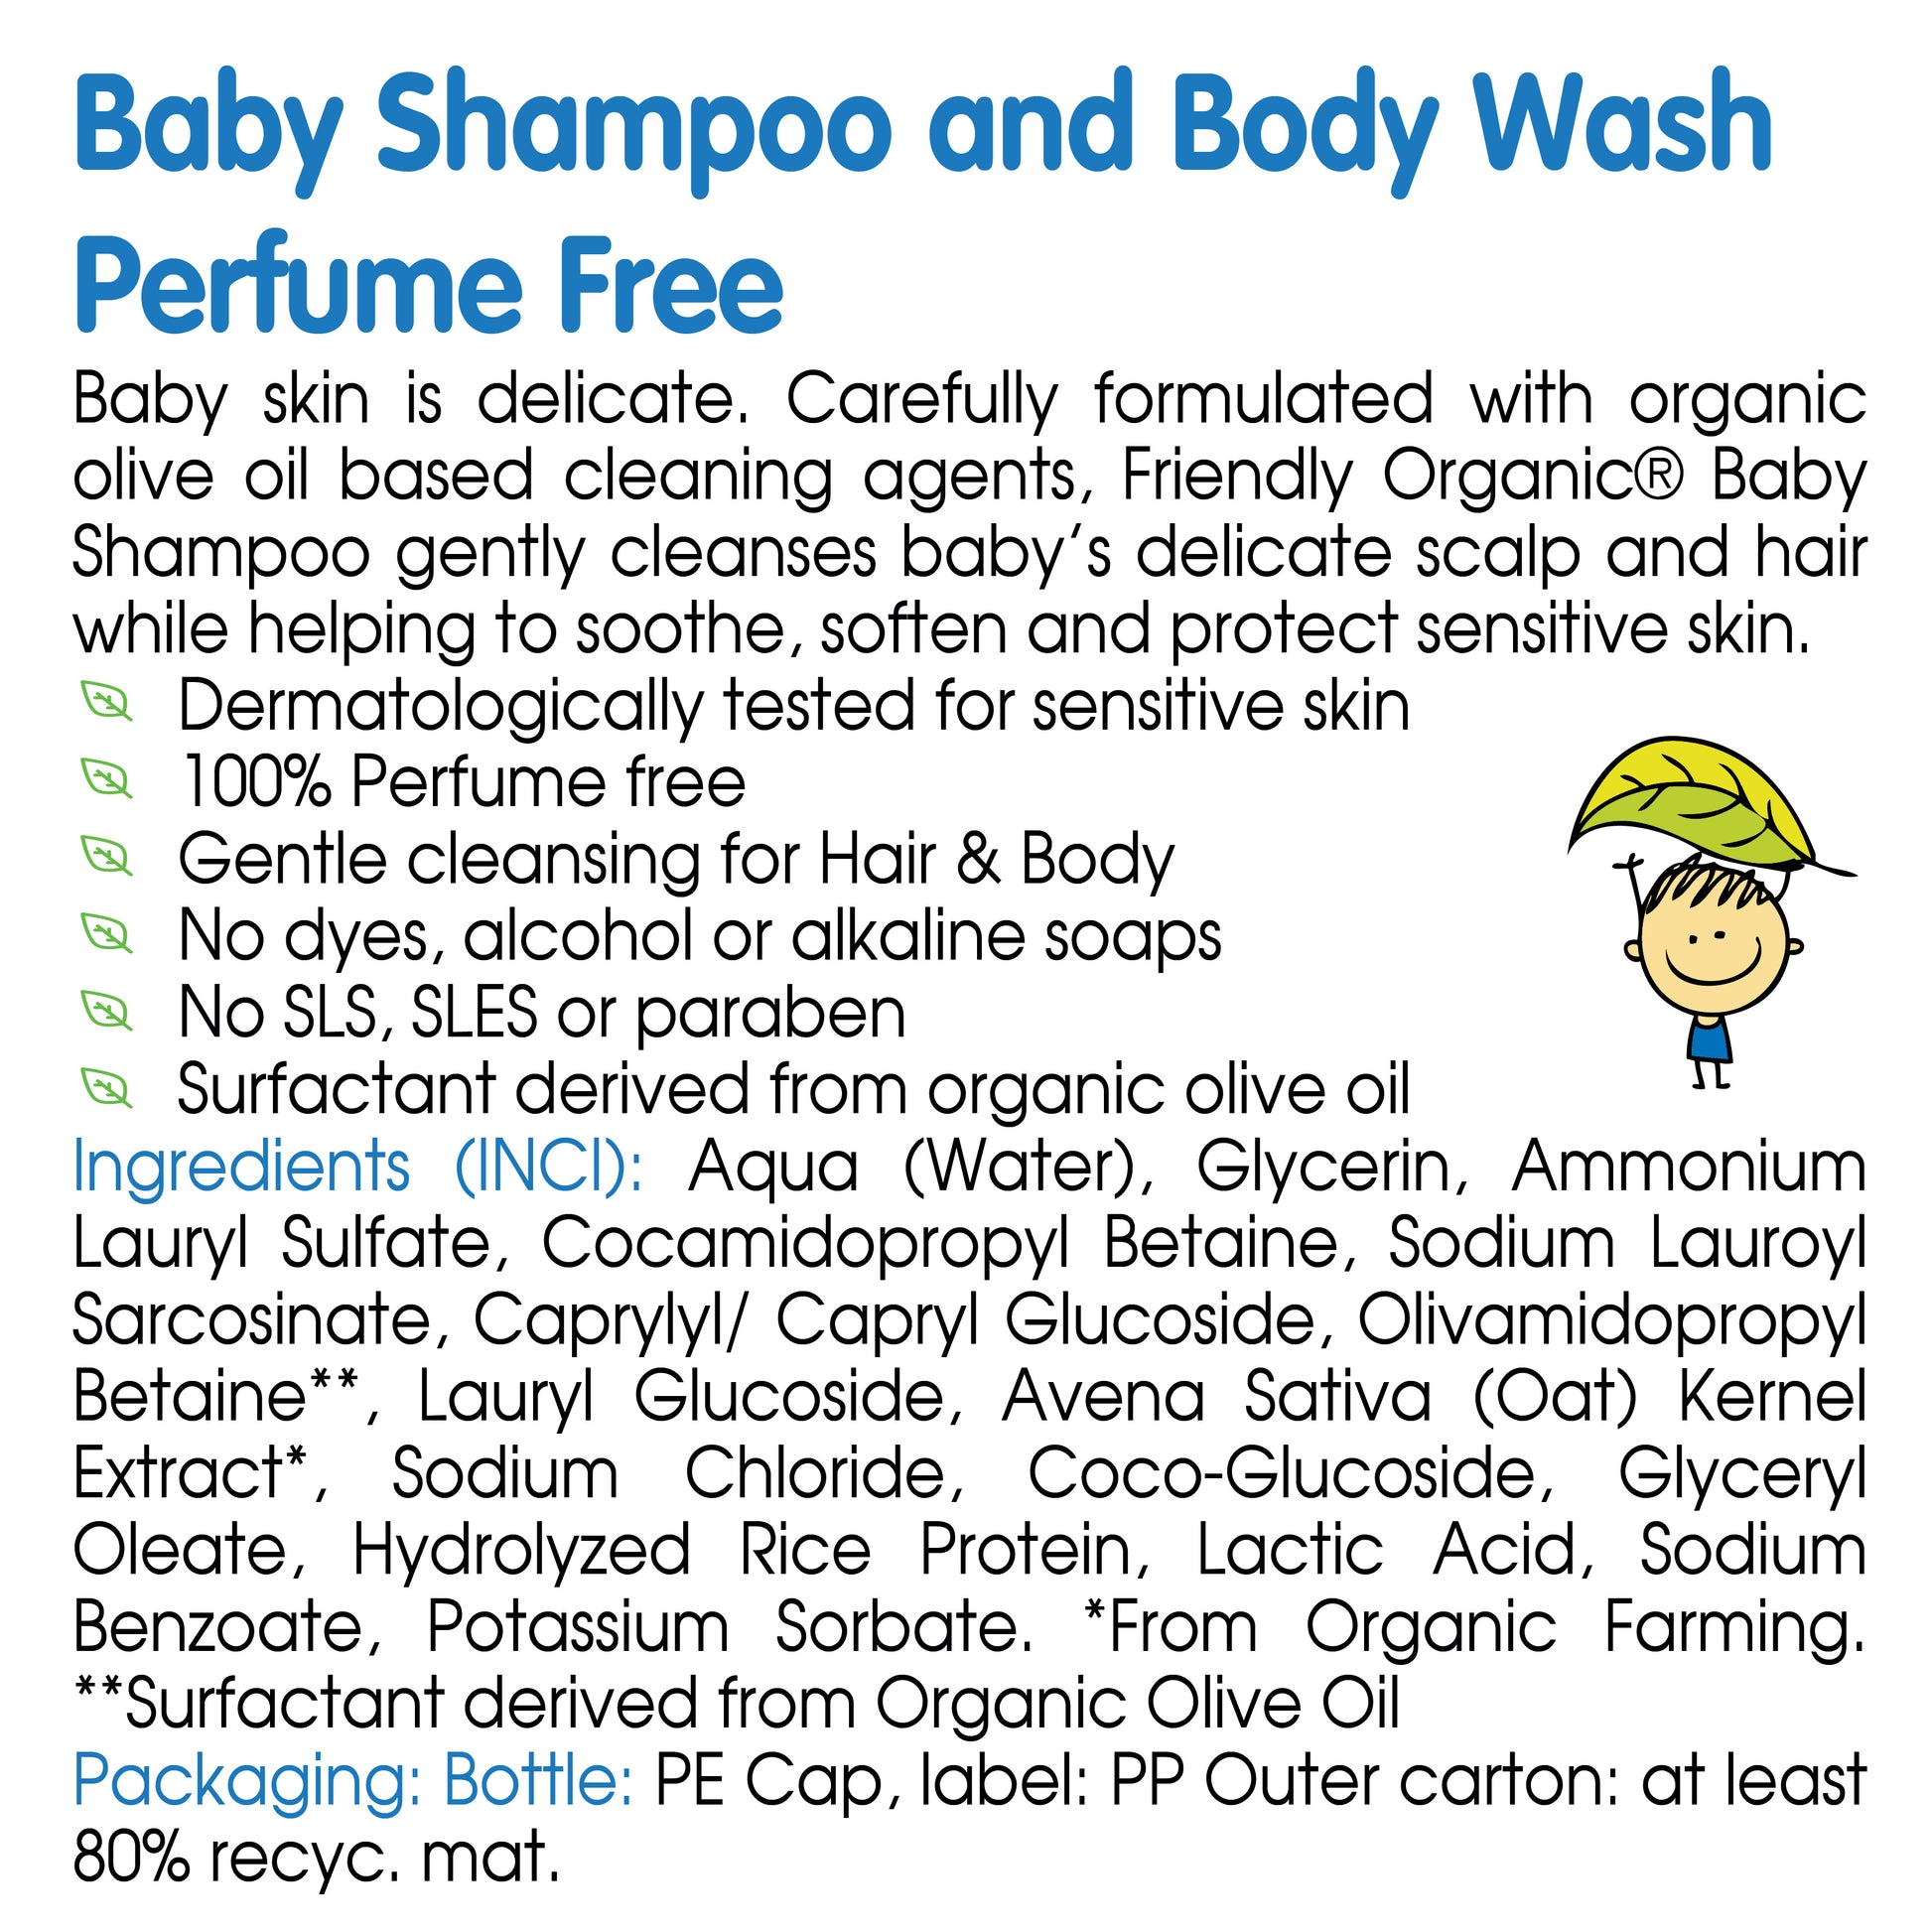 Friendly Organic 400ml Perfume Free Baby Shampoo & Body Wash, Clear